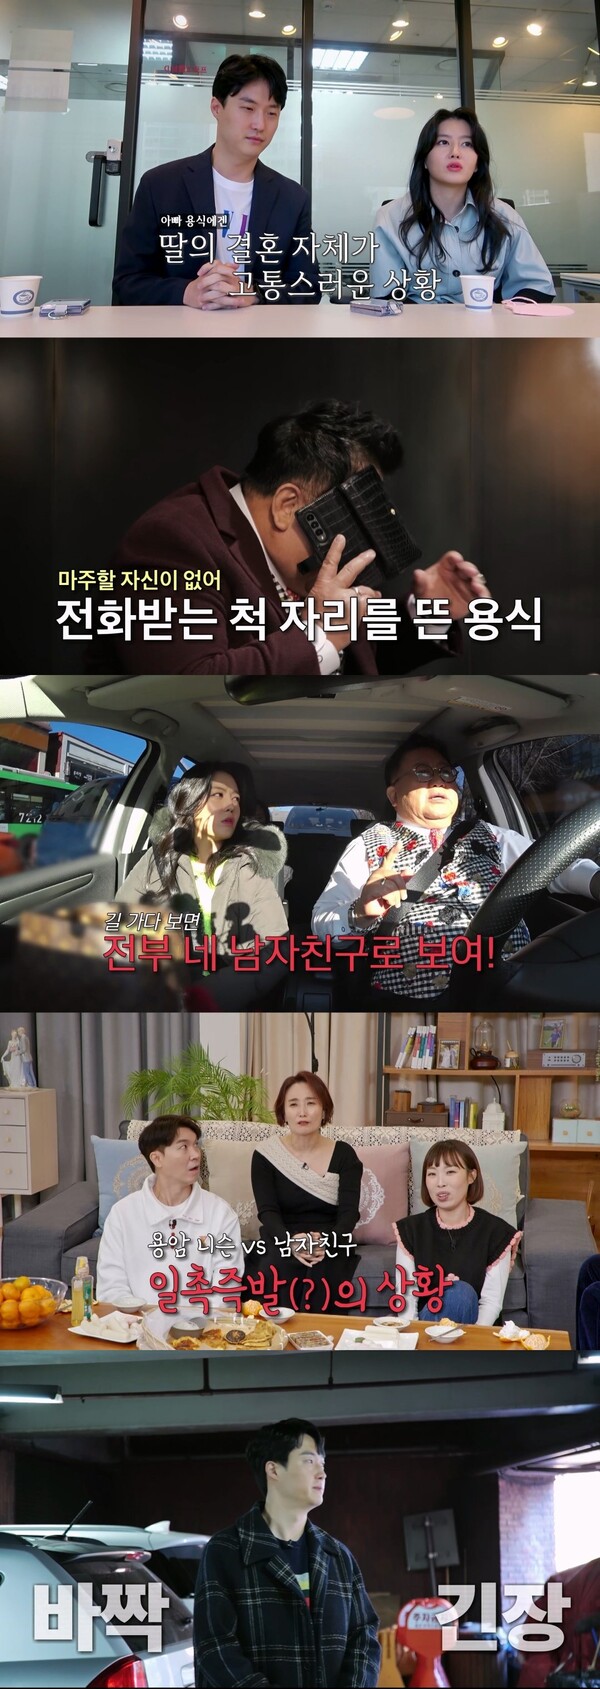 Lee Yong-sik e sua filha Lee Soo-min apareceram na transmissão 23. Foto = tirada de um programa 